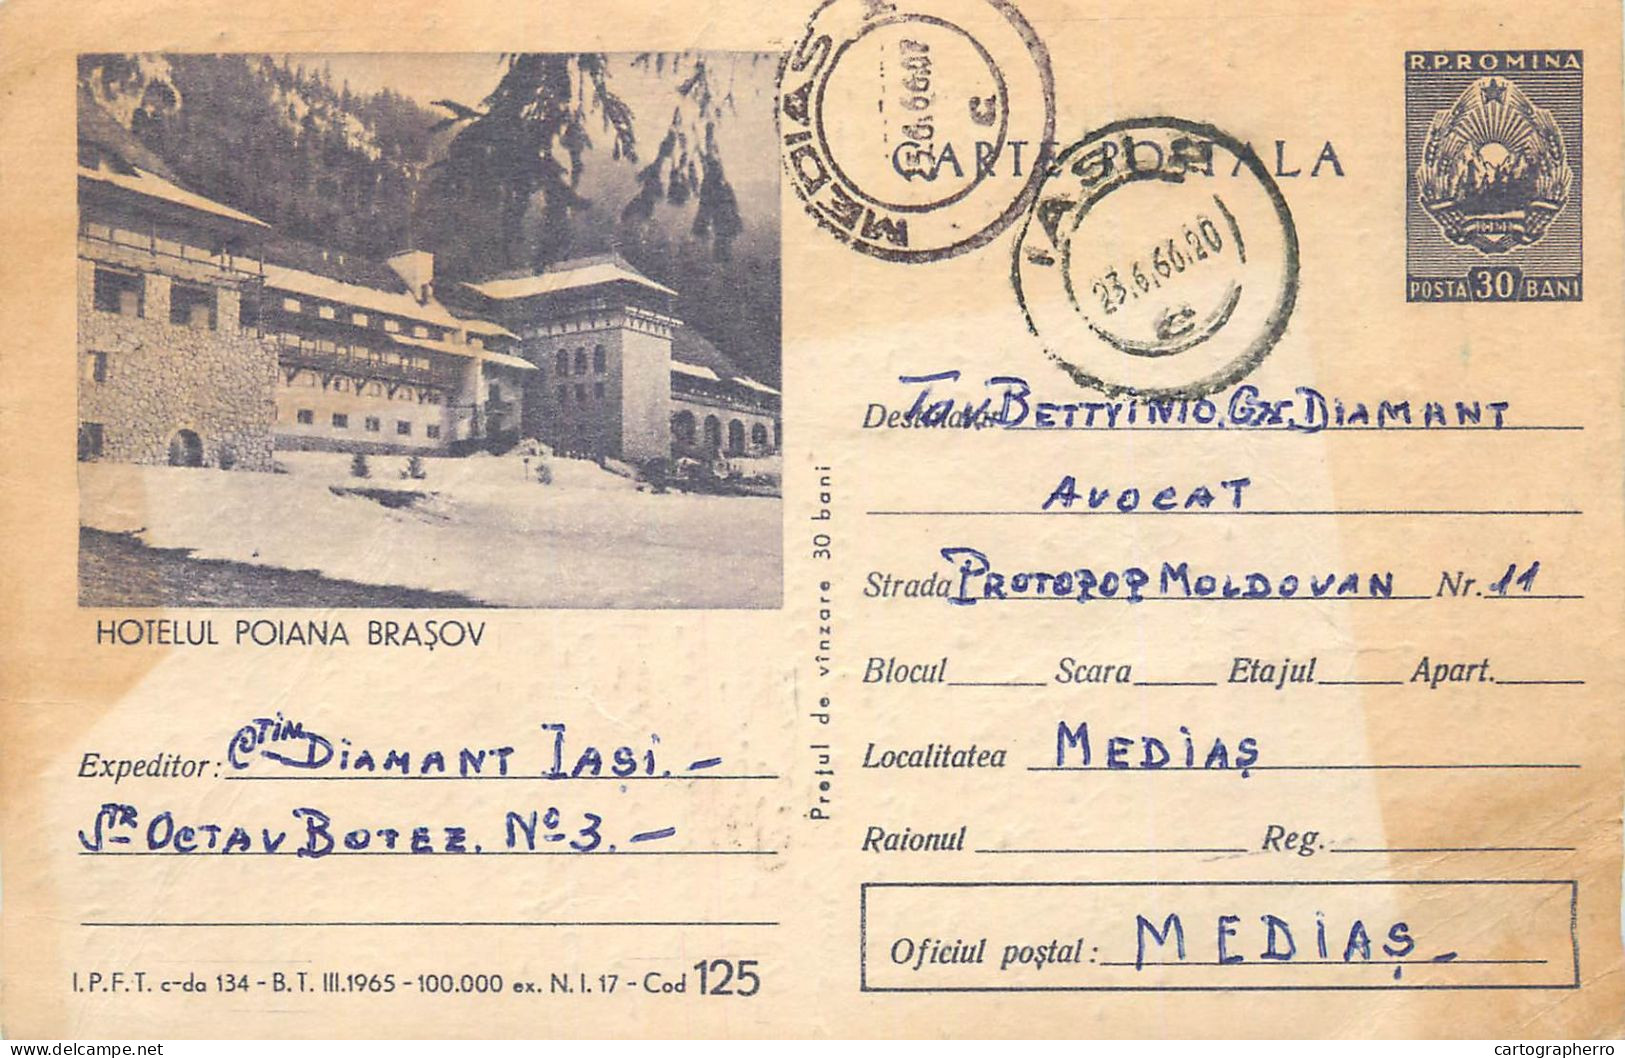 Postal Stationery Postcard Romania Hotel Poiana Brasov 1966 - Romania